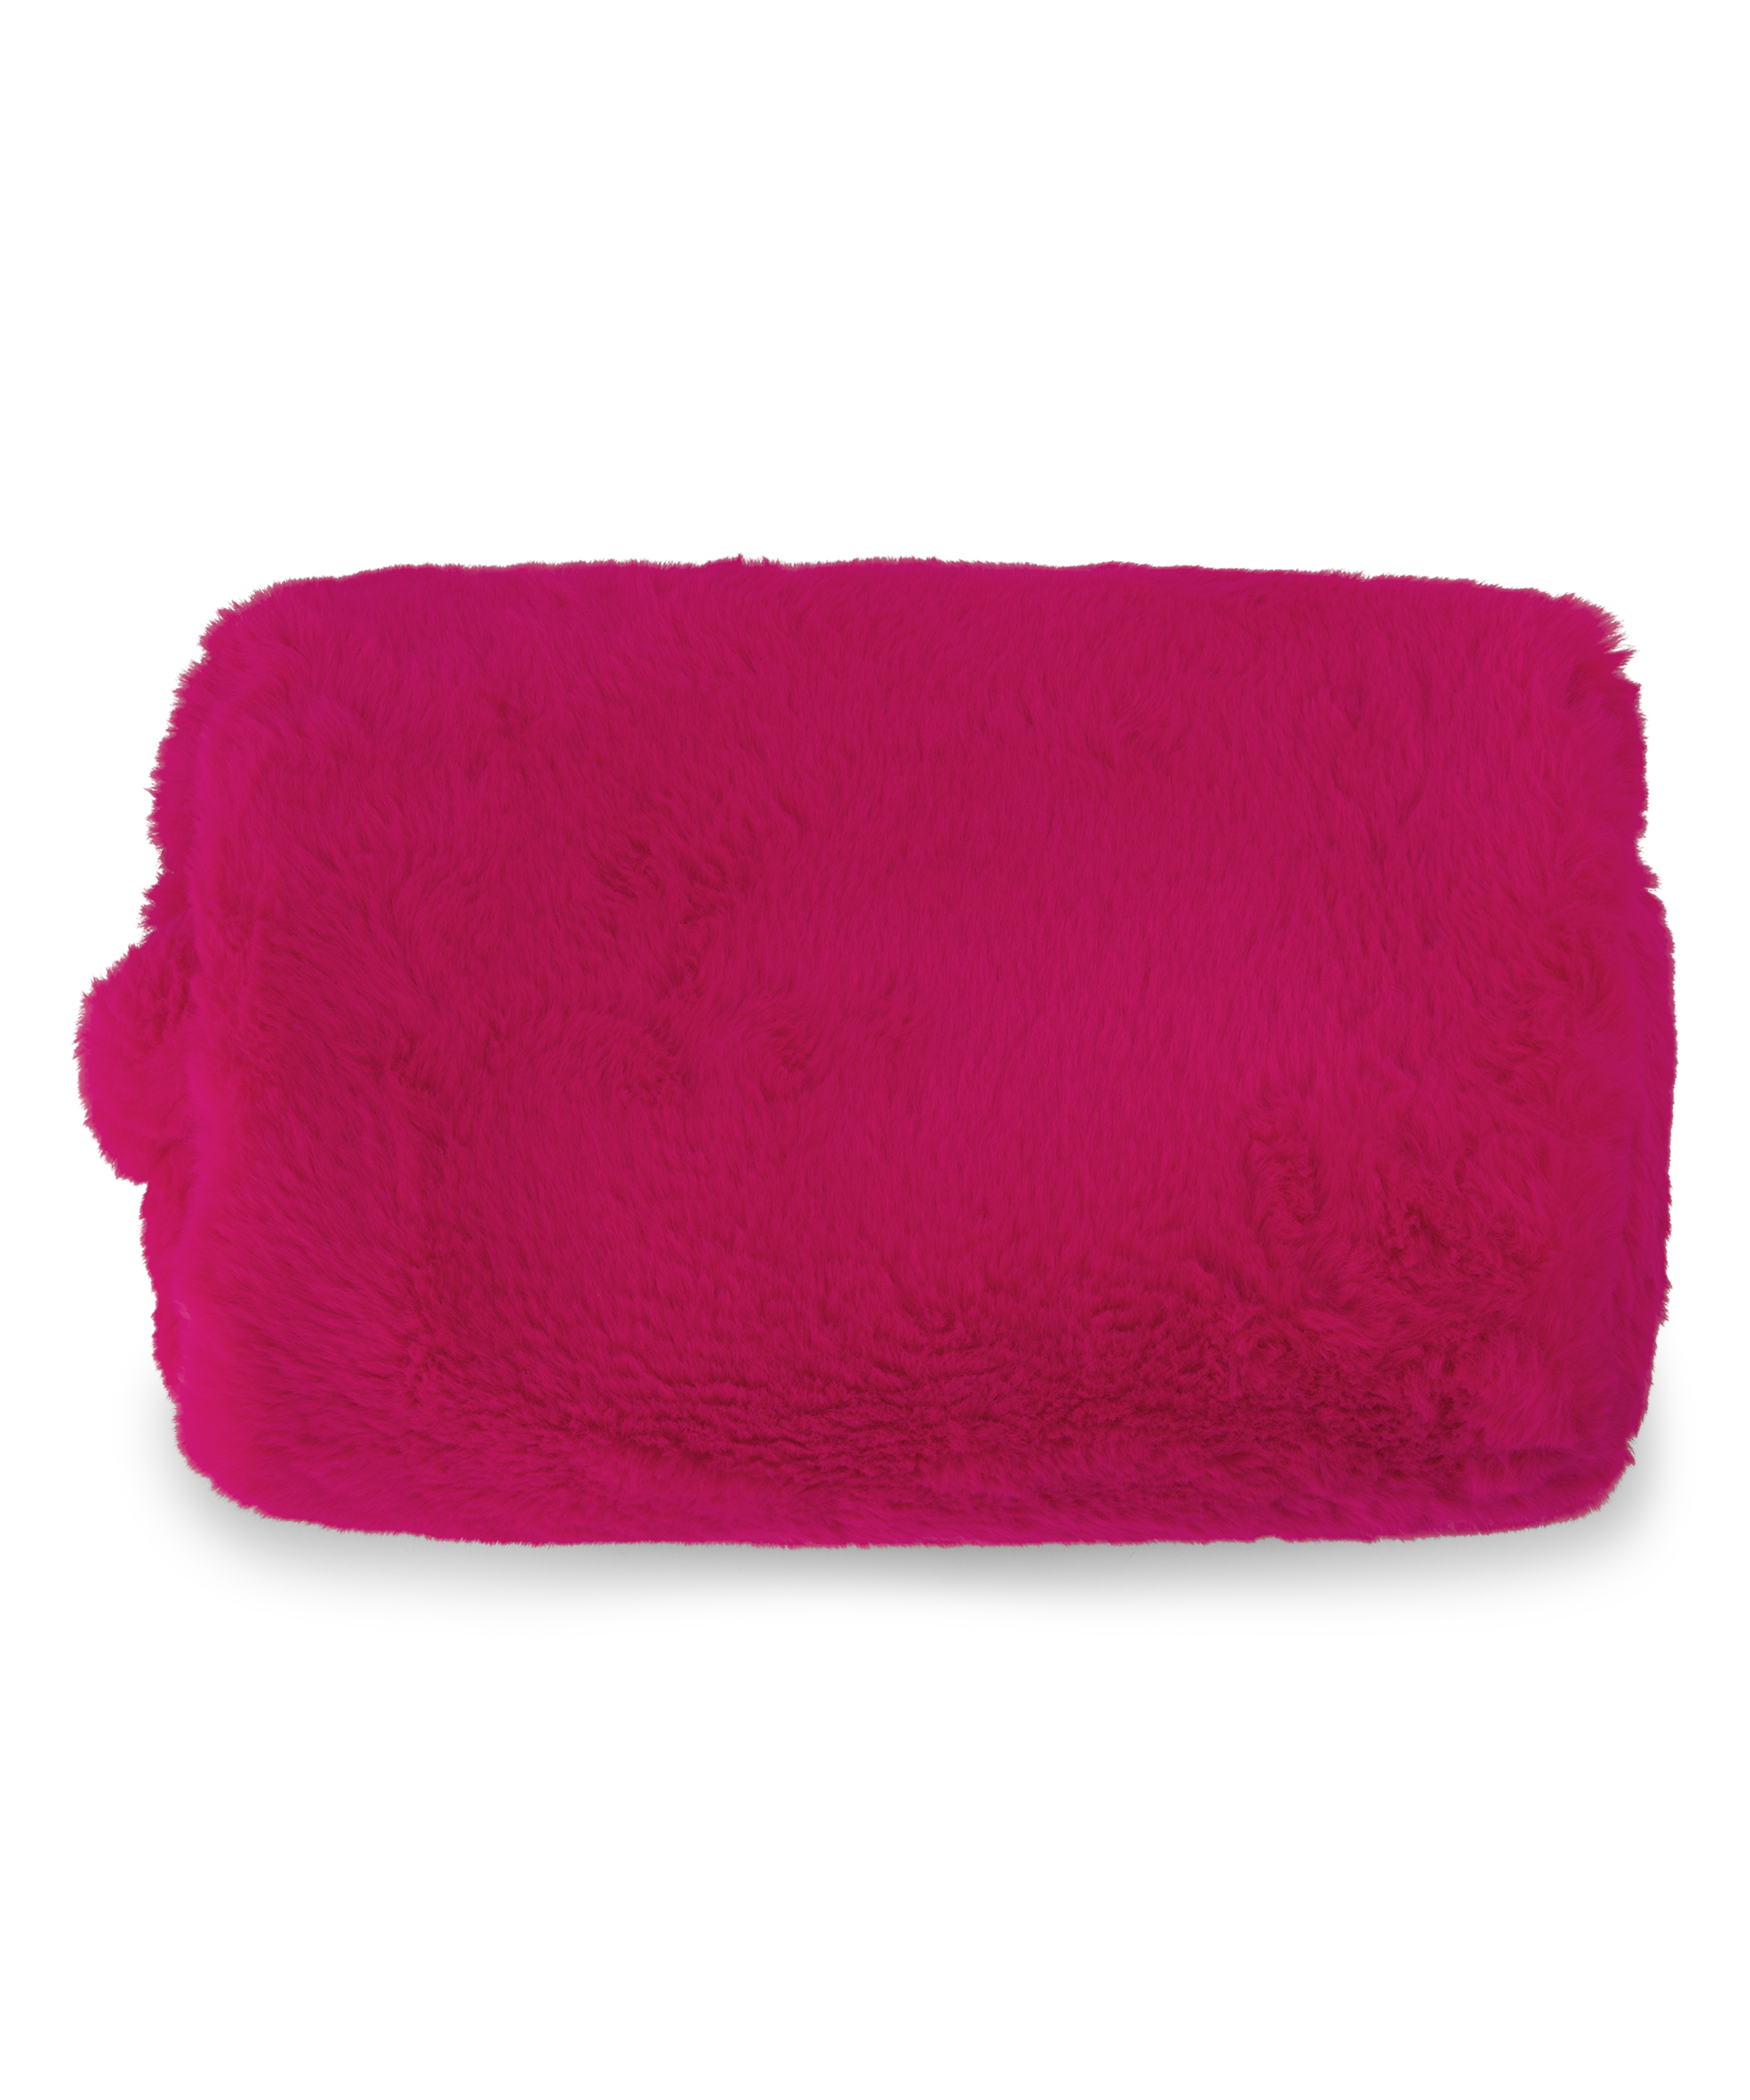 Make-up bag Fake fur, Różowy, main